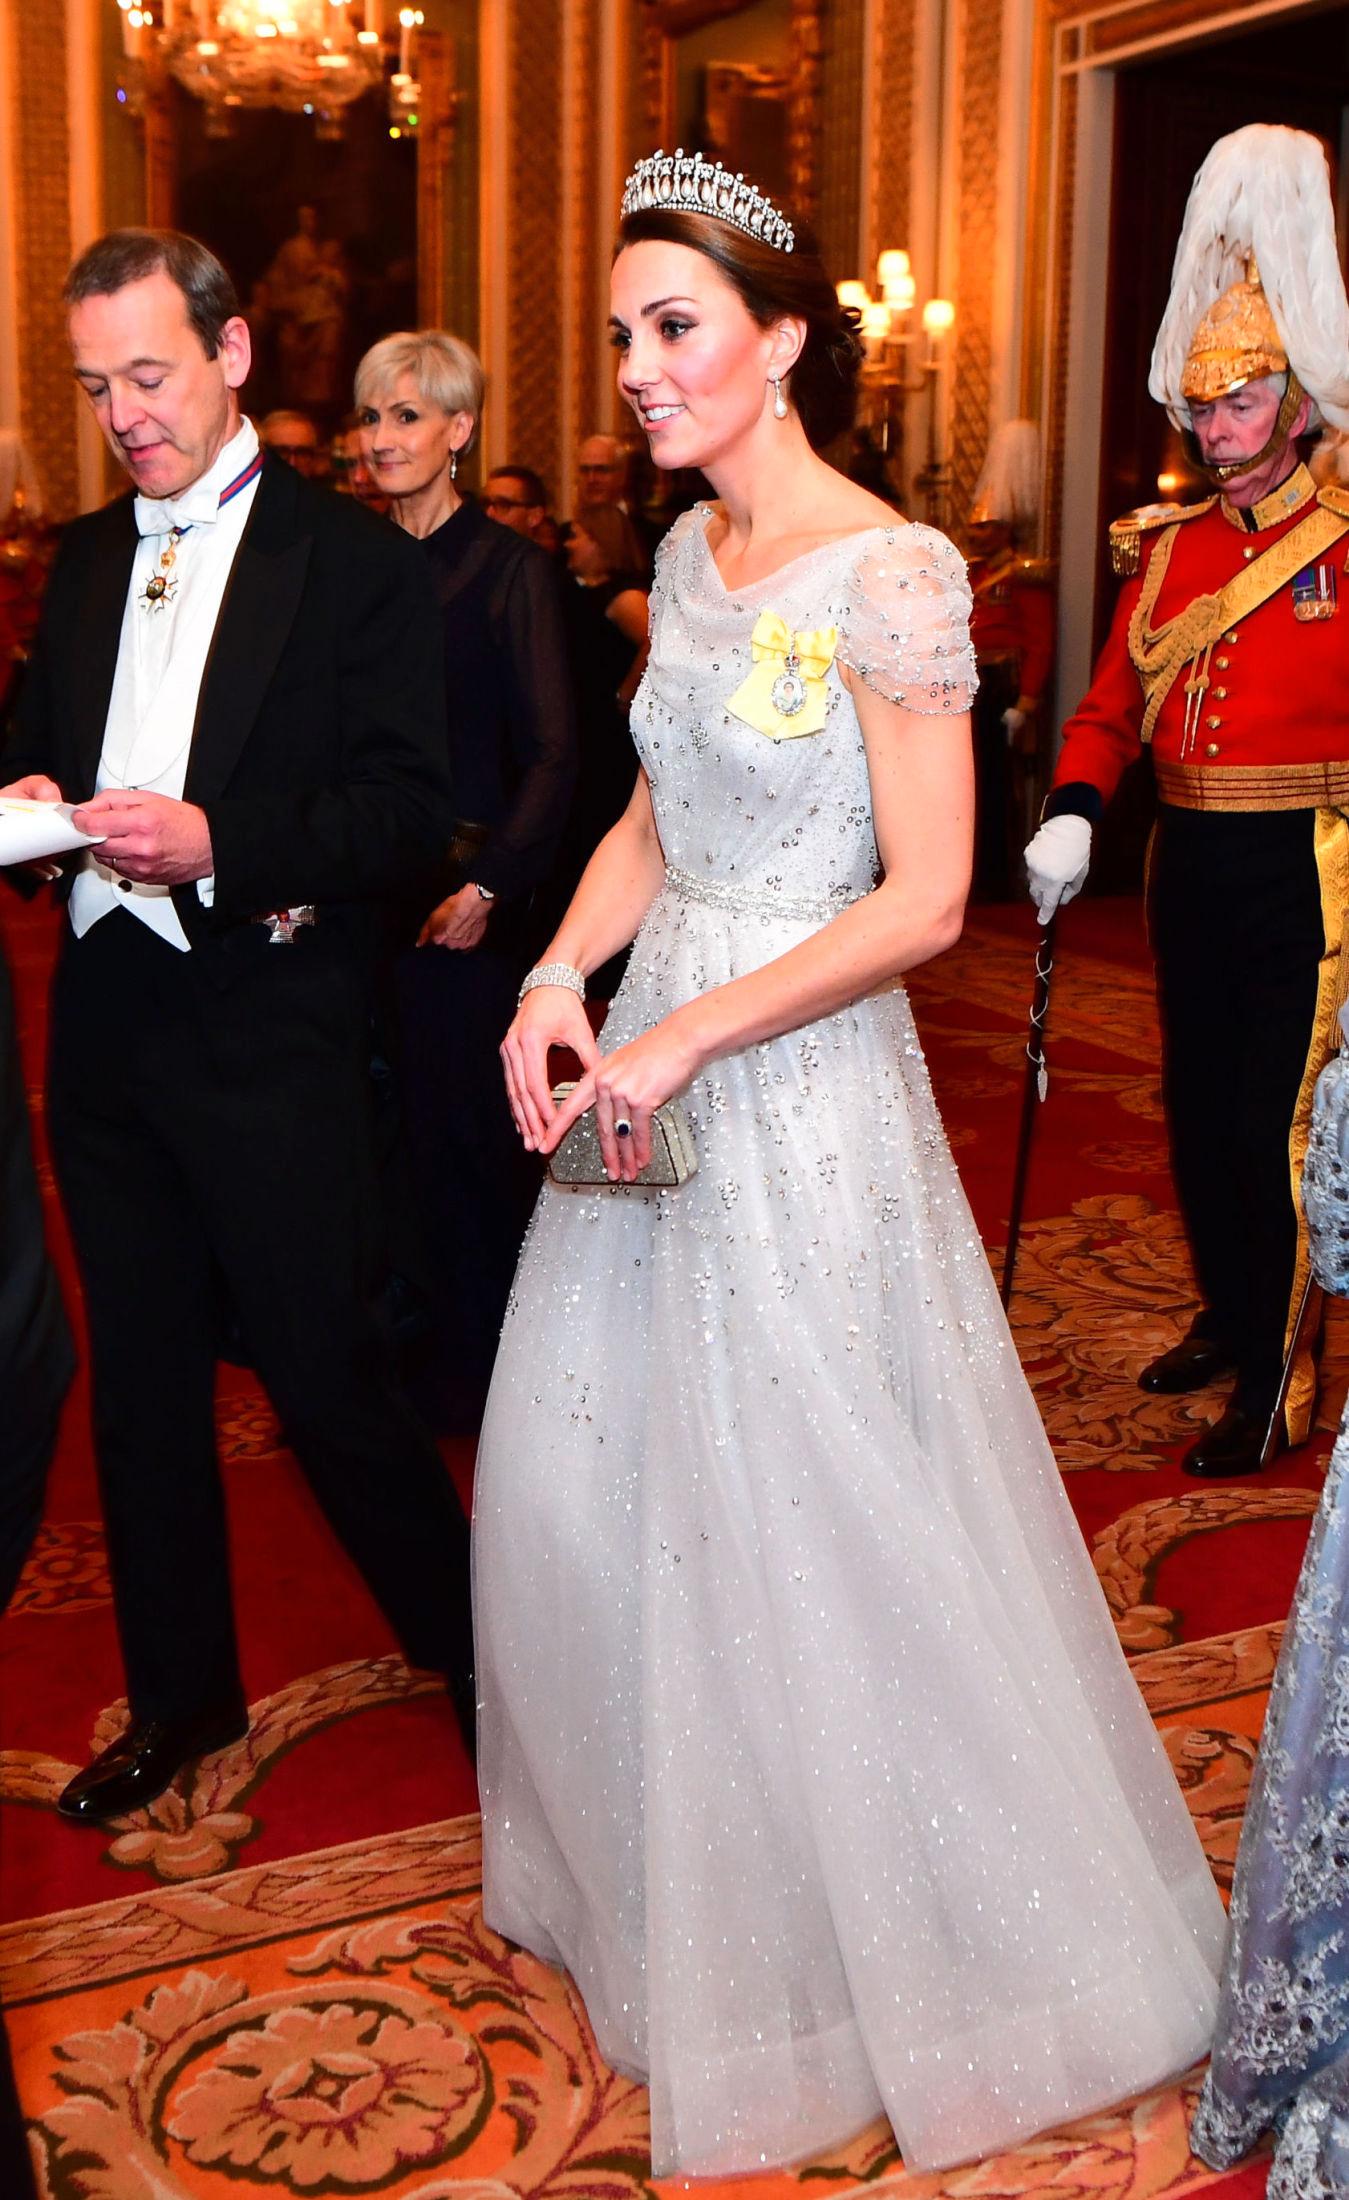 PRINSESSEKJOLE: Her er hertuginnen av Cambridge på årets vinterfest i Buckingham Palace. Foto: Getty Images.